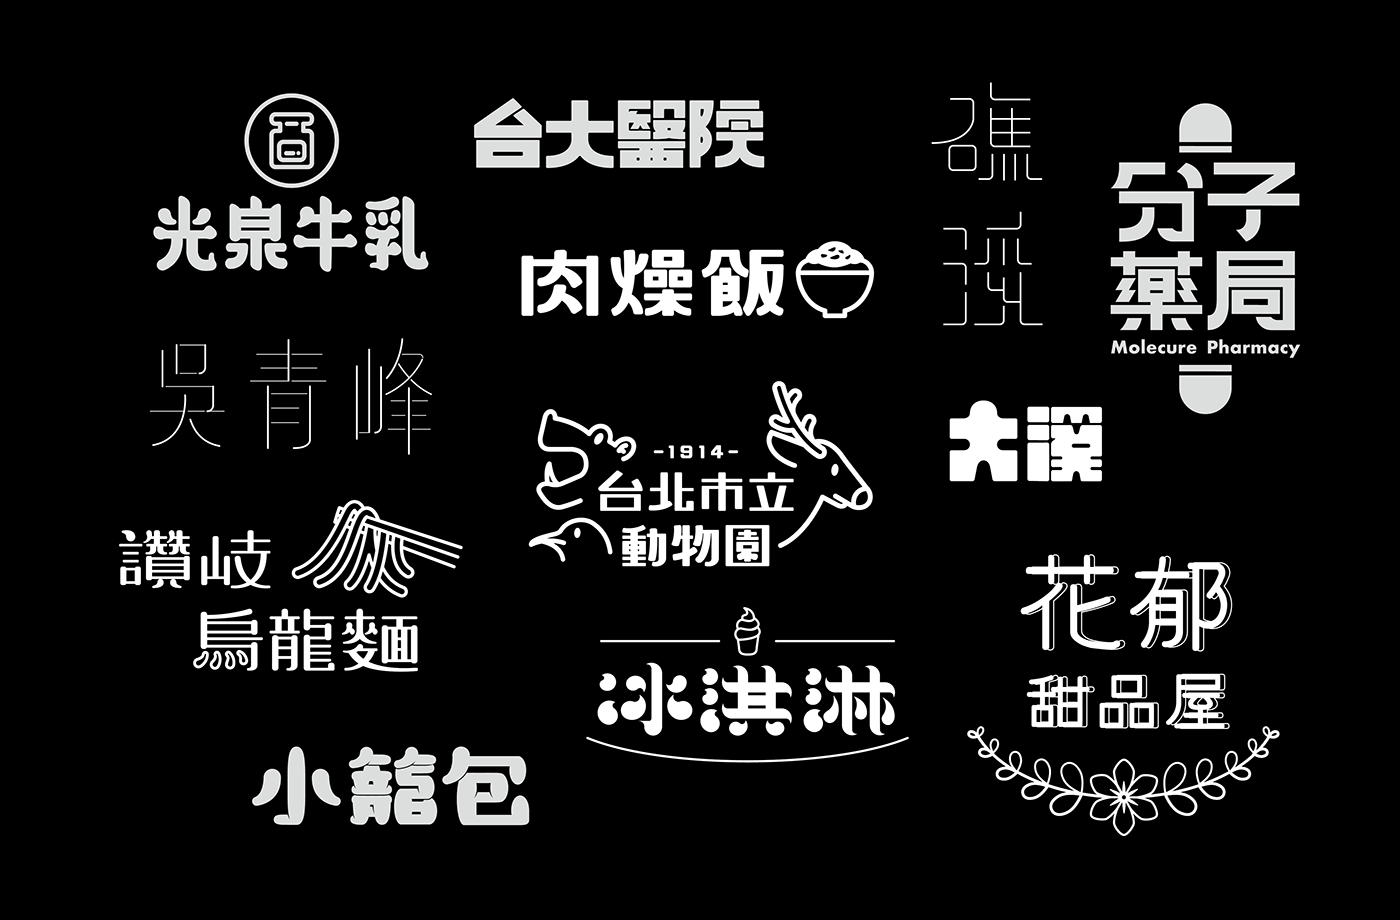 台湾设计师張文瑄字体设计作品